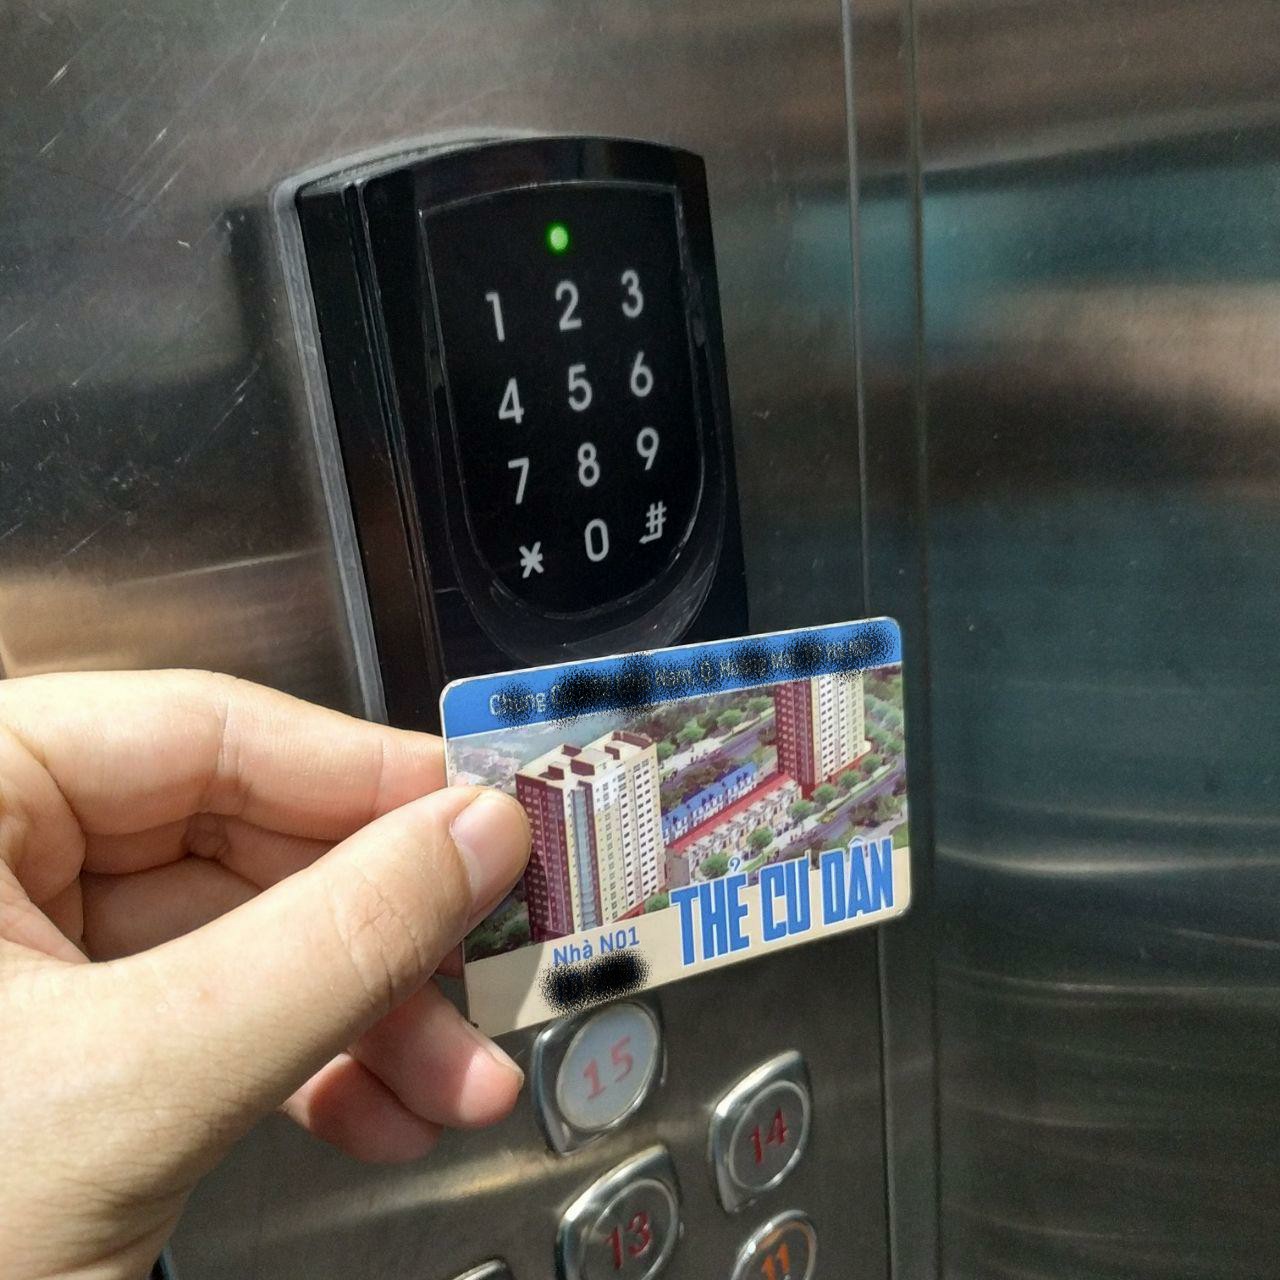 sao chép thẻ từ thang máy